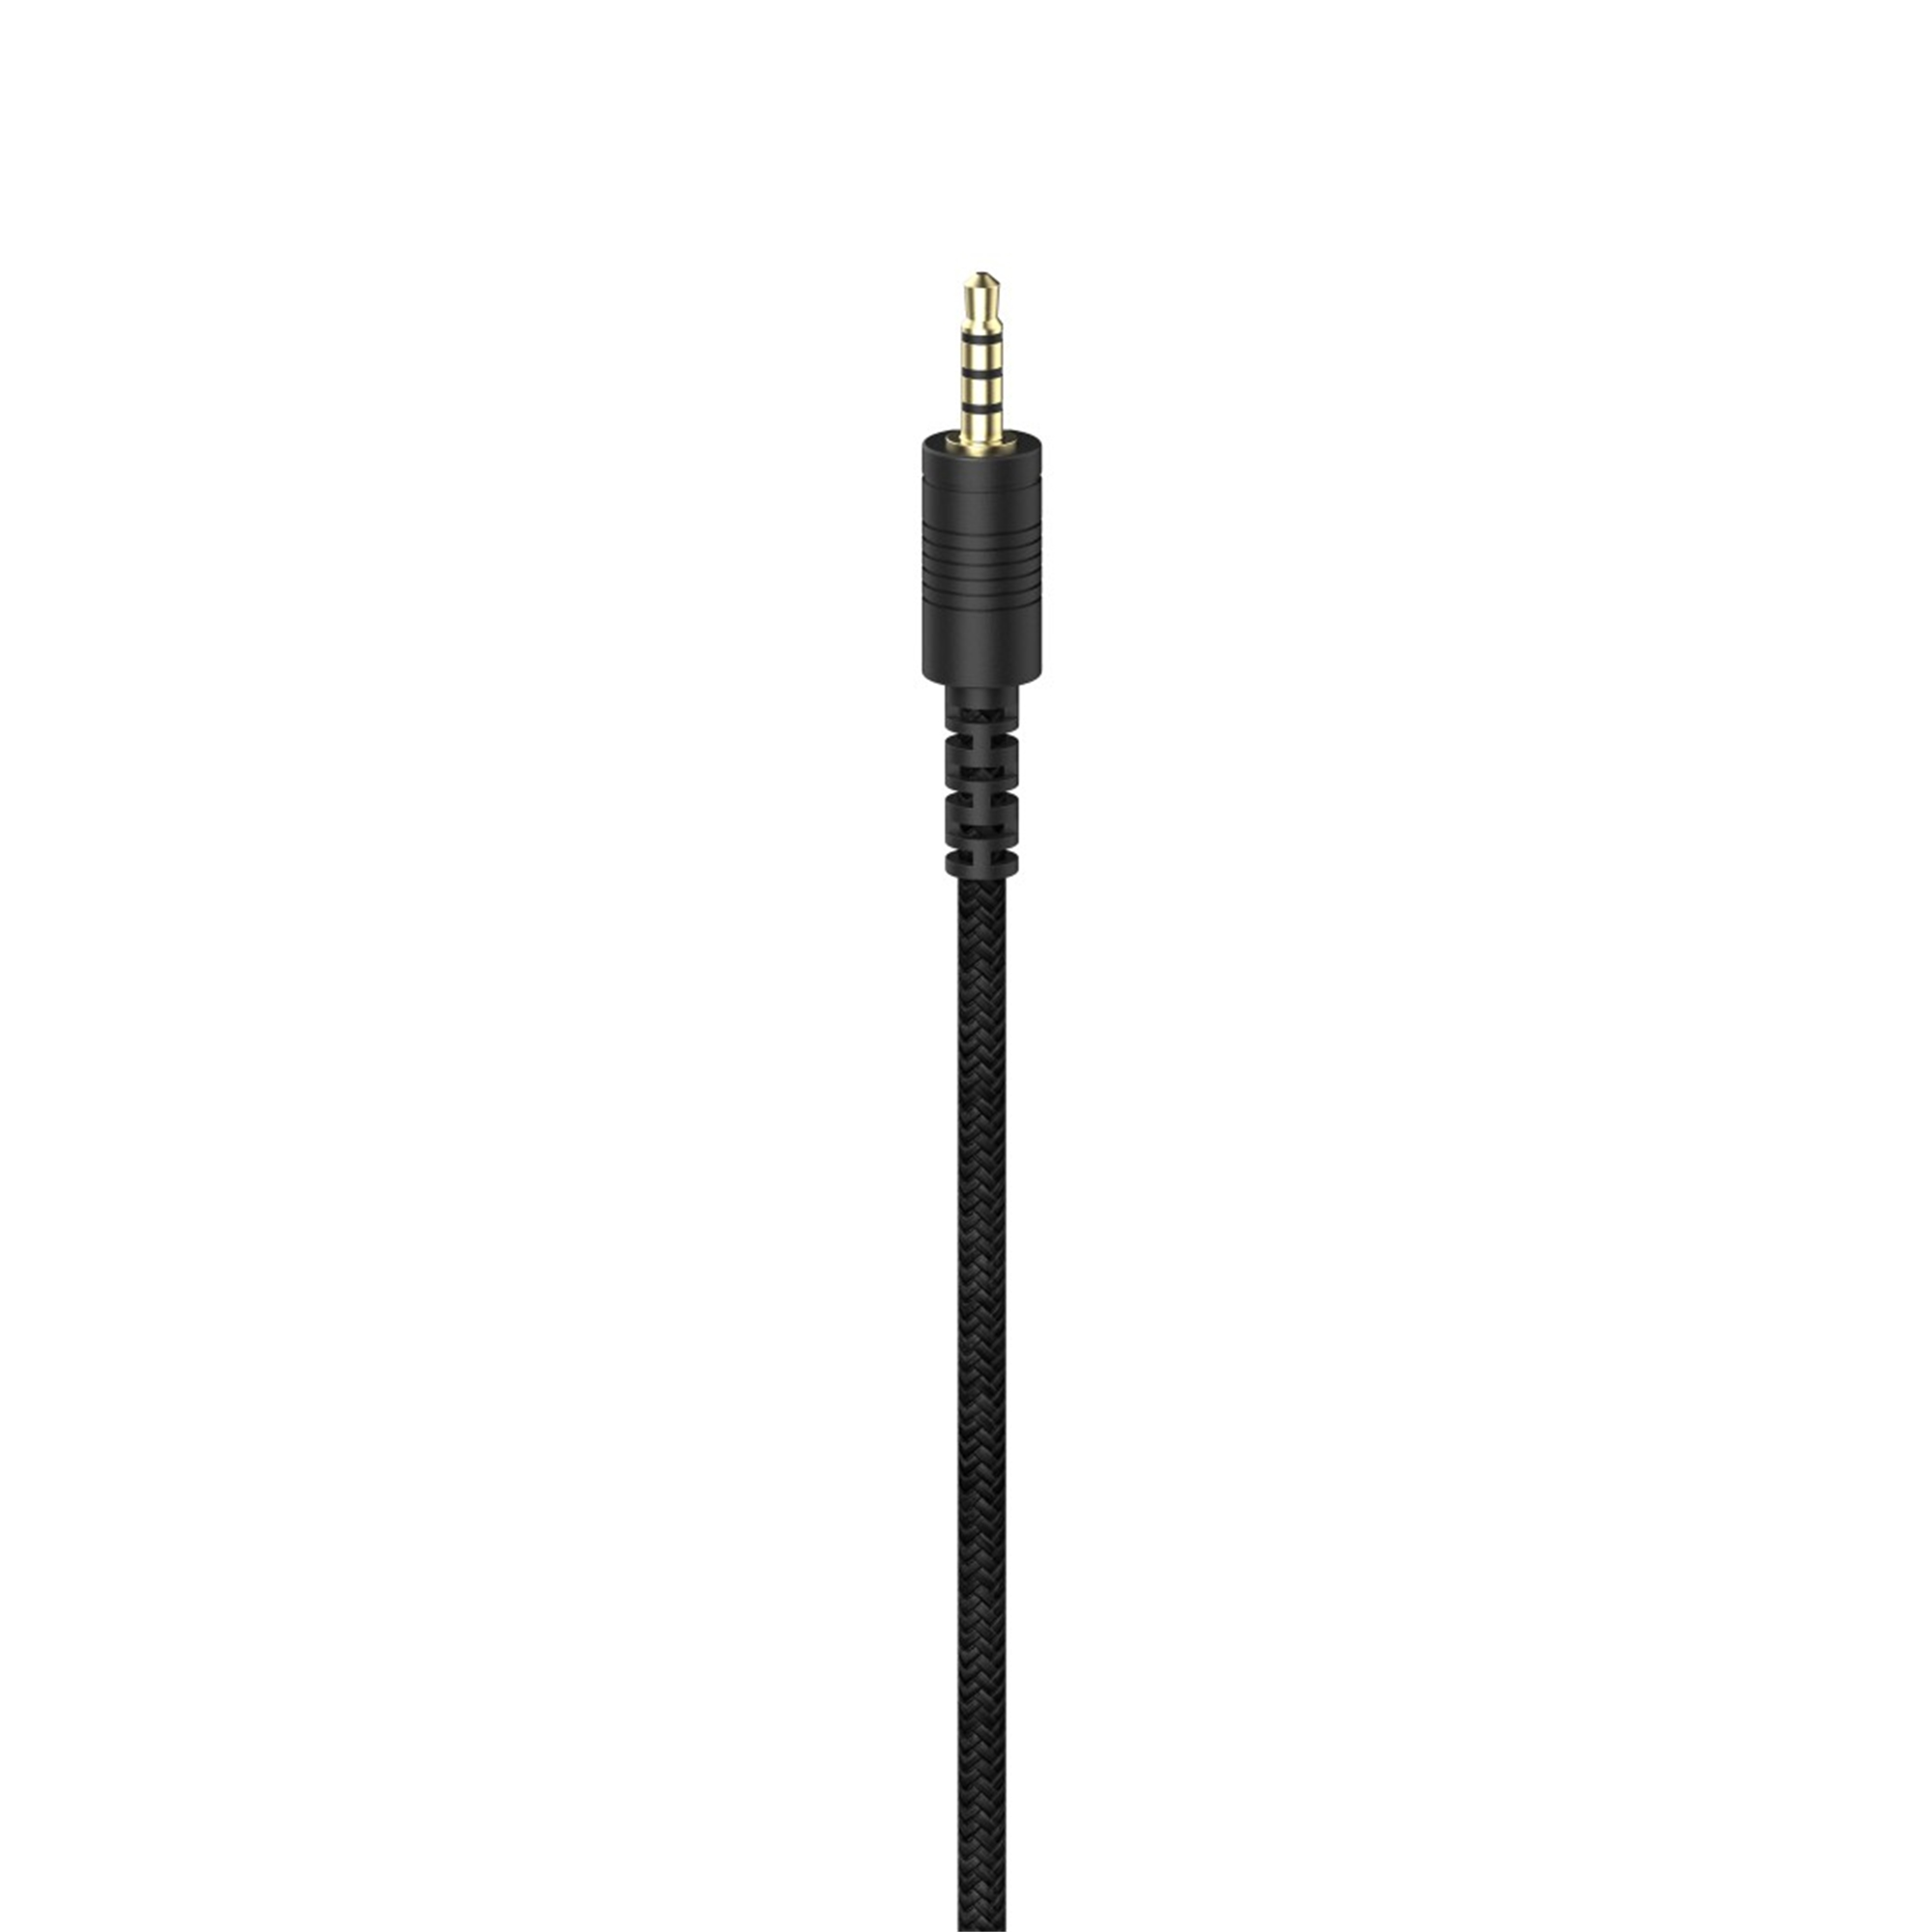 Weiß Over-ear Gaming-Headset V2, SoundZ 100 URAGE